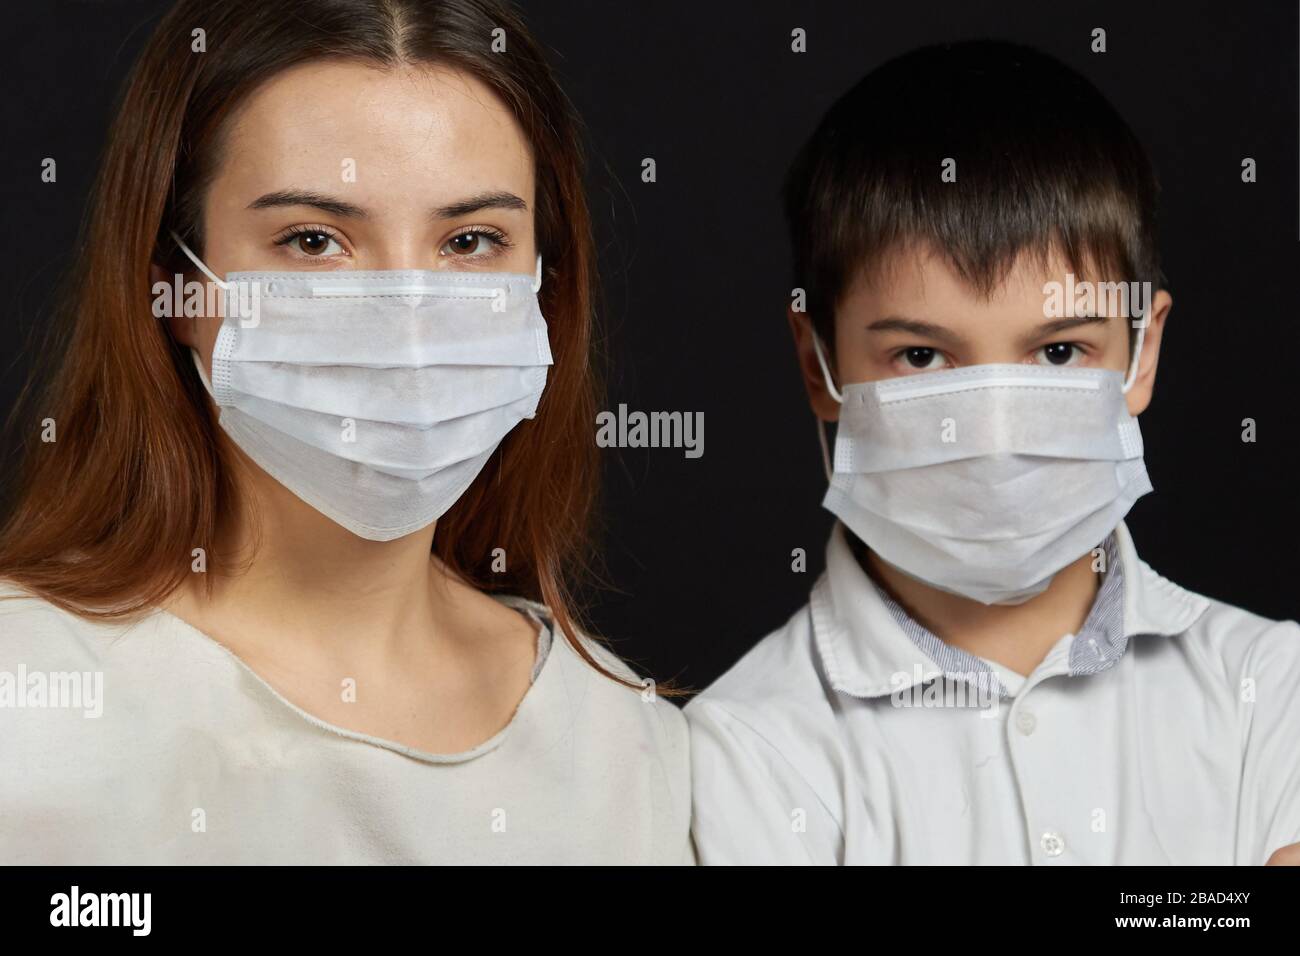 Retrato de las personas en una máscara médica una niña con una máscara médica un niño en una máscara, para proteger contra la propagación del virus. Foto de stock